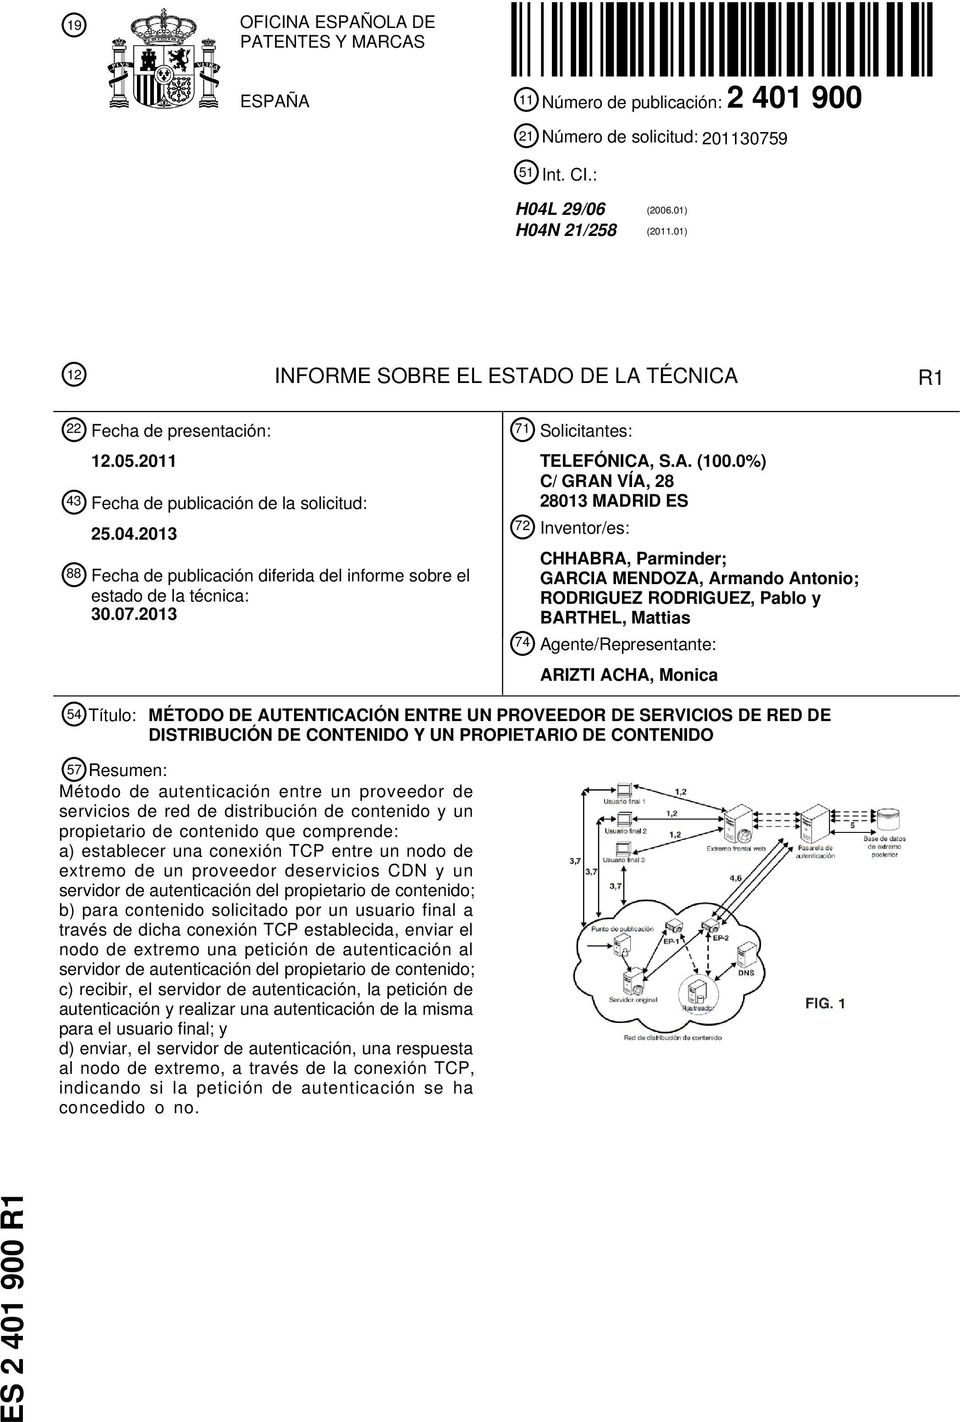 2013 88 Fecha de publicación diferida del informe sobre el estado de la técnica: 30.07.2013 71 Solicitantes: TELEFÓNICA, S.A. (100.